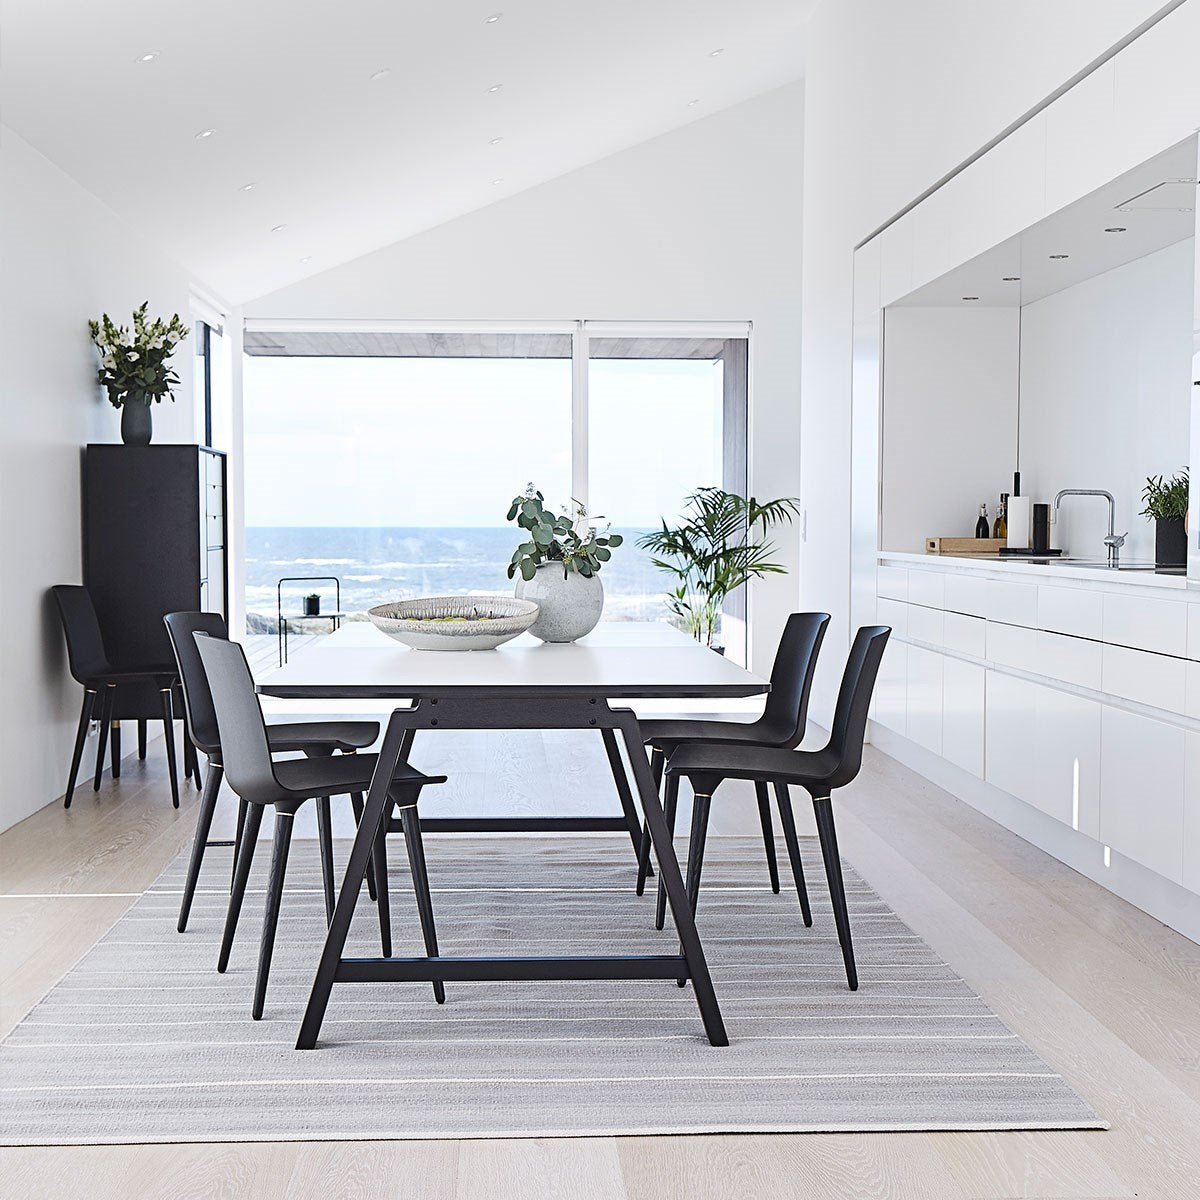 Andersen Furniture T1 Tavolo estendibile, laminato bianco, cornice nera, 160 cm